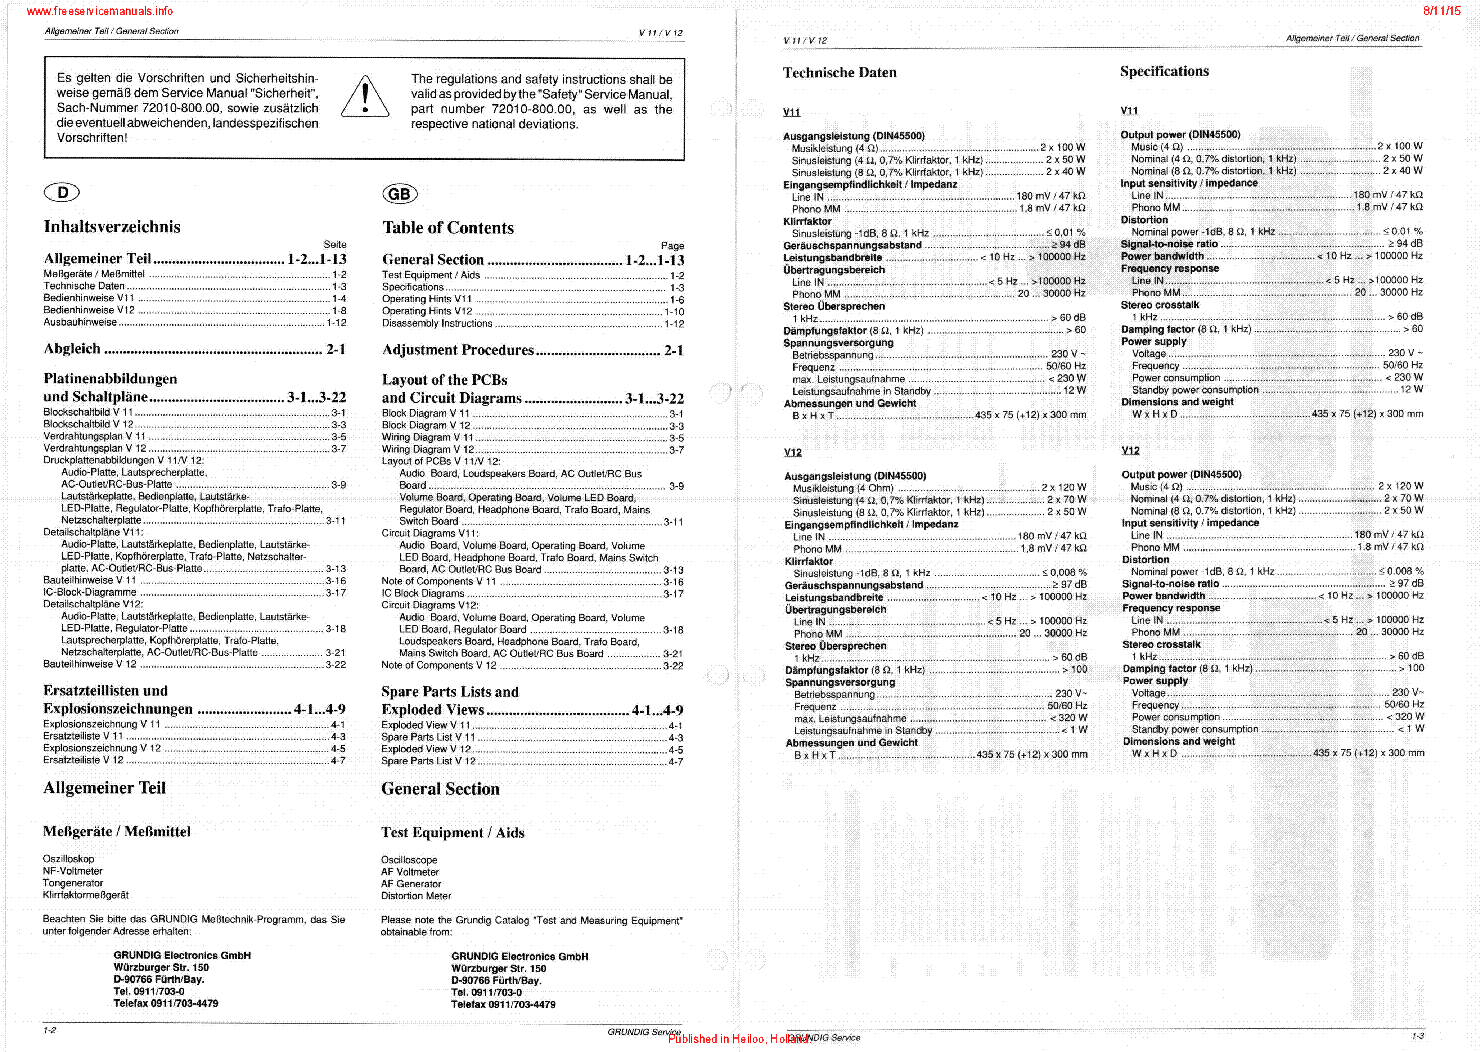 GRUNDIG V11 V12 ORIG SM service manual (2nd page)